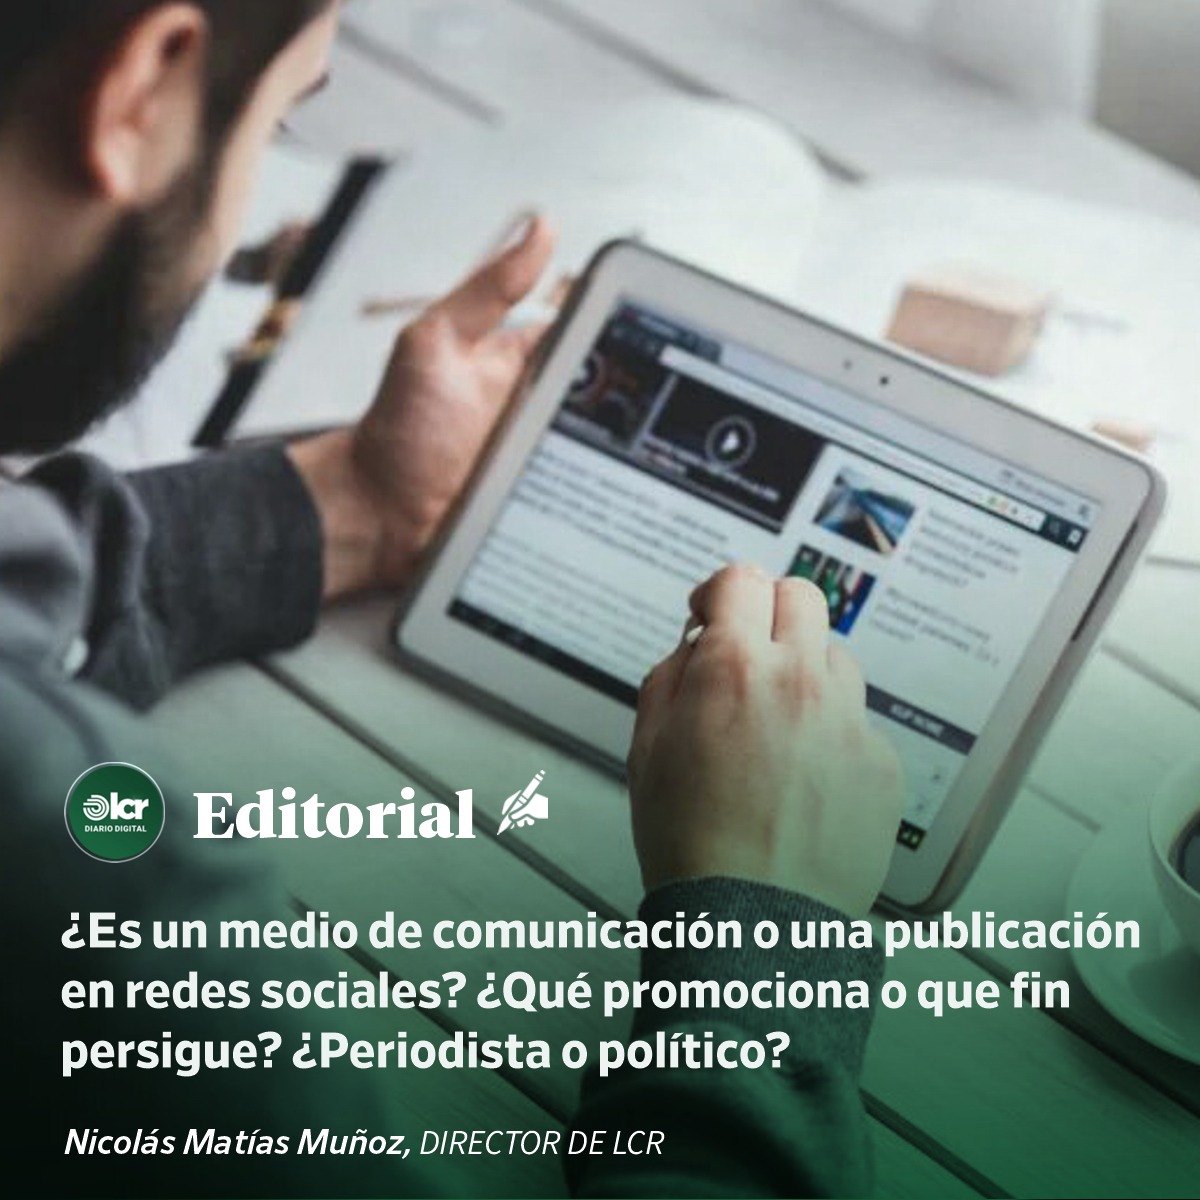 ¿Es un medio de comunicación o una publicación en redes sociales? ¿Qué promociona o qué fin persigue? ¿Periodista o político?